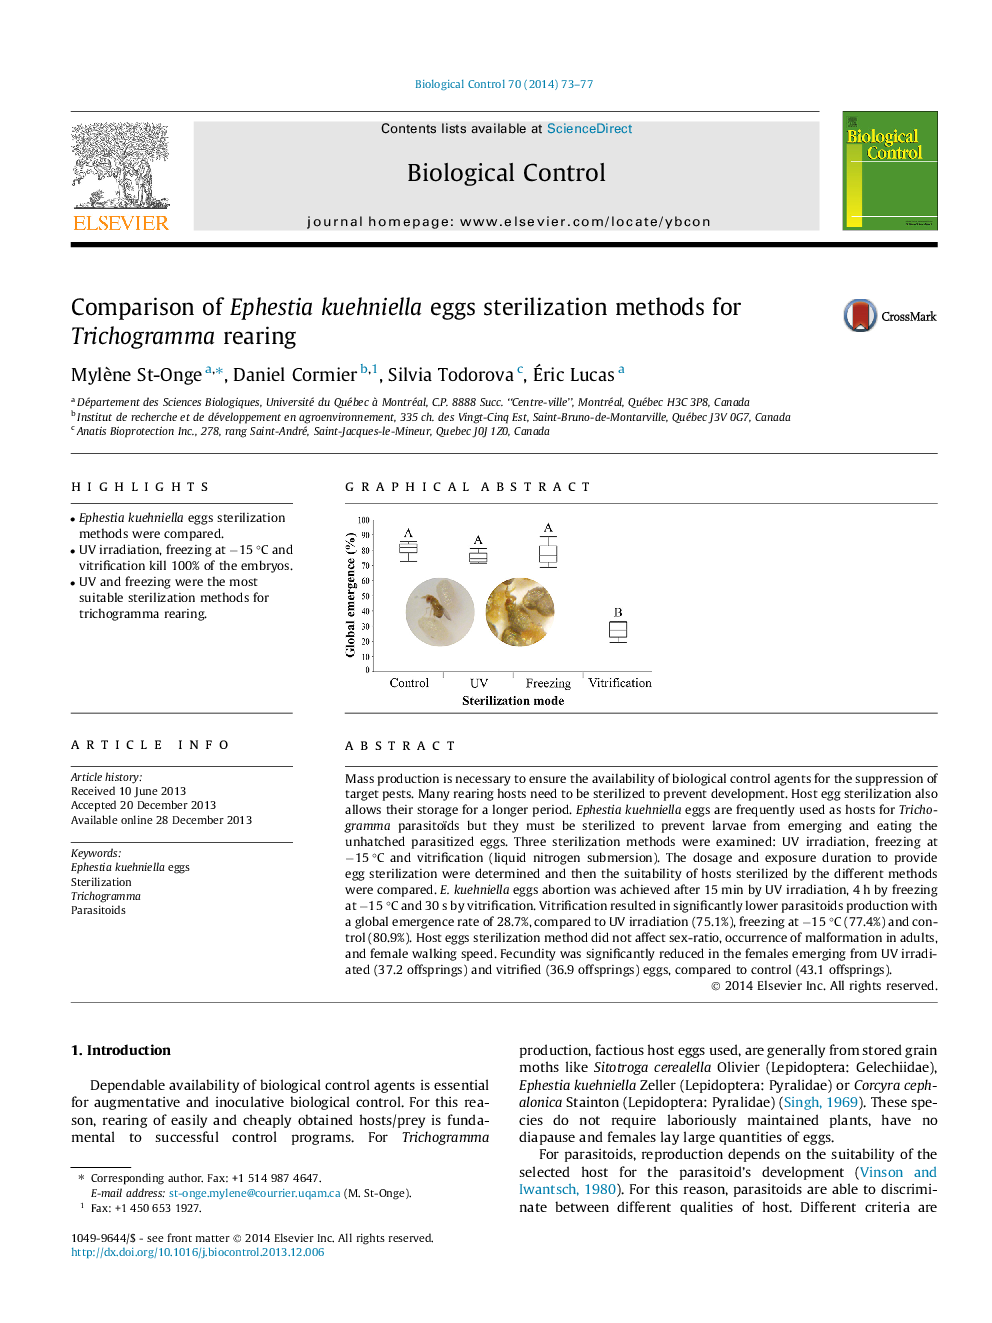 Comparison of Ephestia kuehniella eggs sterilization methods for Trichogramma rearing